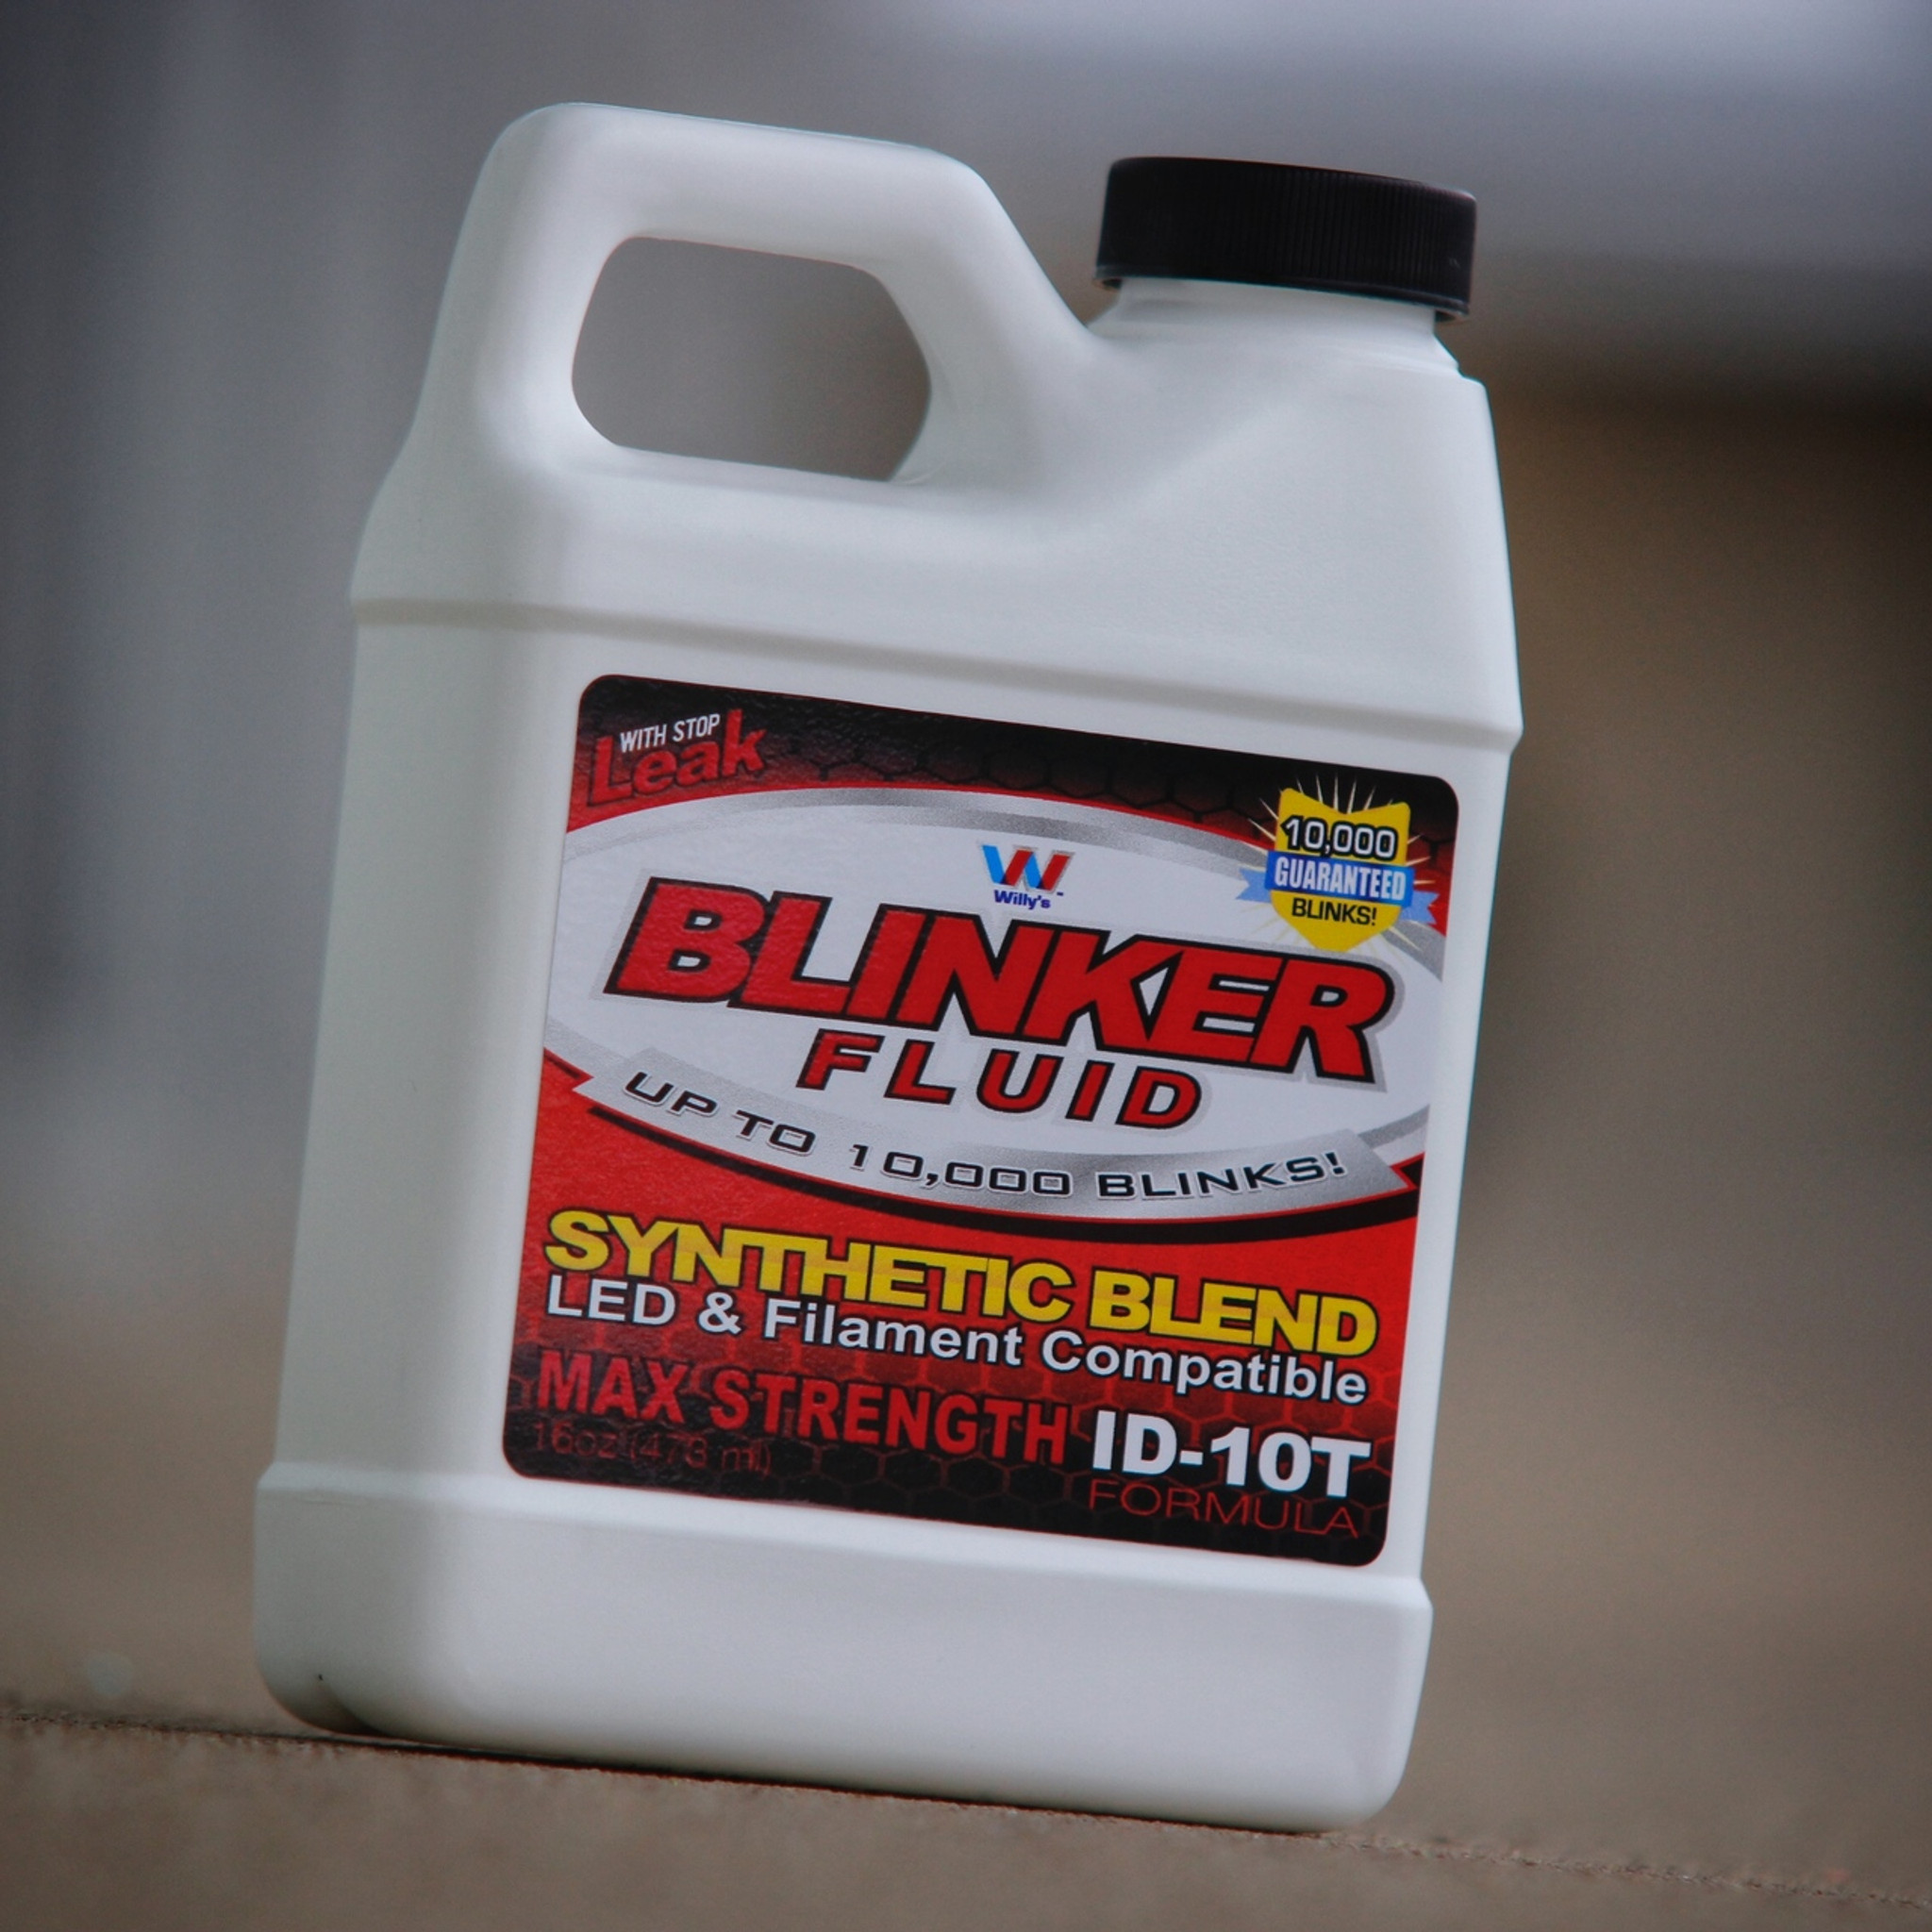 Pass the Blinker Fluid super coupon along to your friends for instant  savings! 💯www.LStarSigns.com💯 #blinkerfluid #blinker #blinkers …